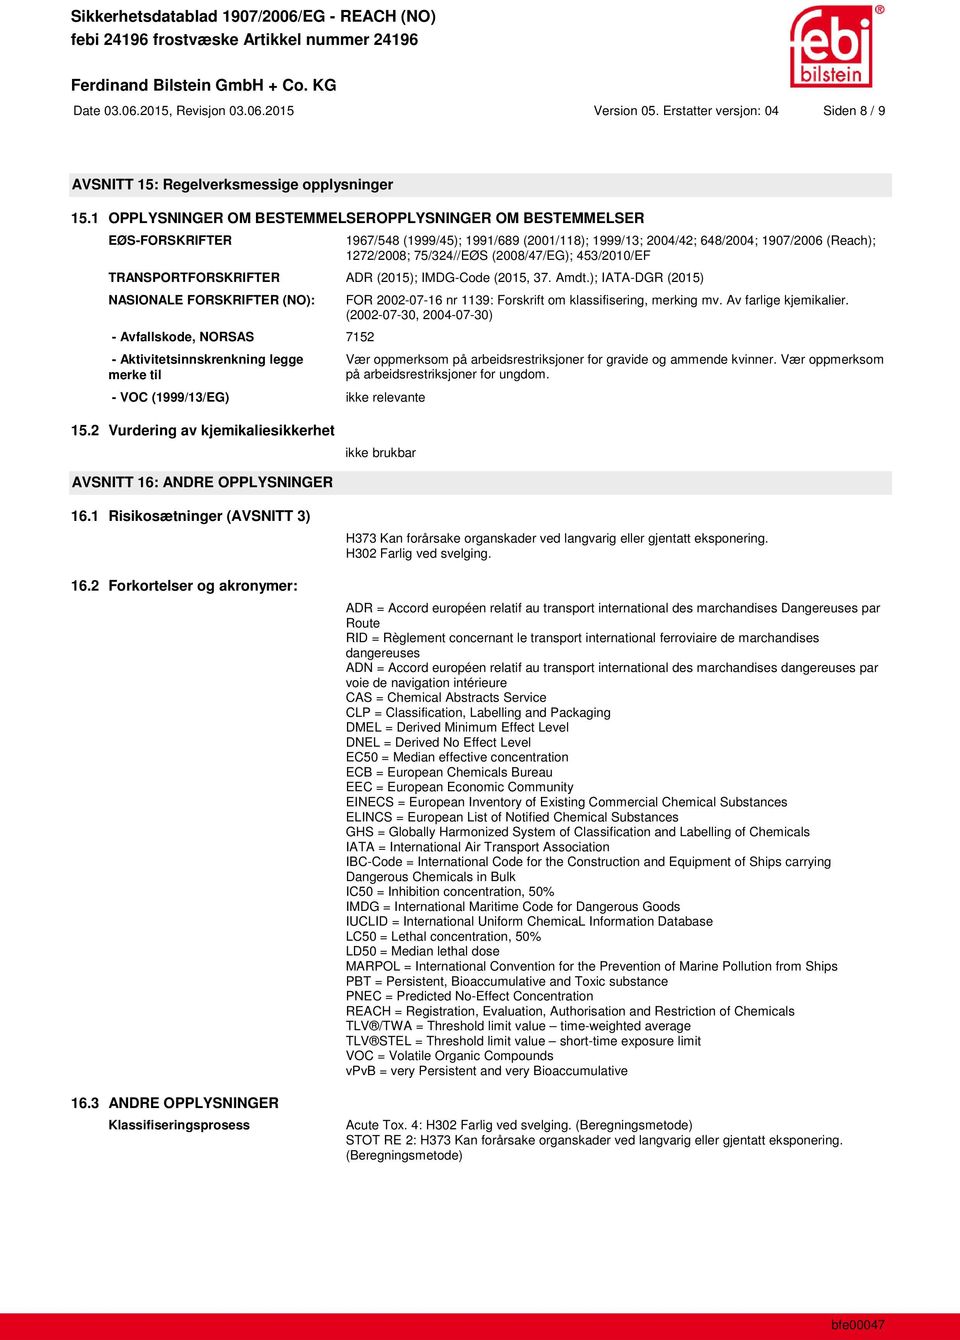 453/2010/EF TRANSPORTFORSKRIFTER ADR (2015); IMDG-Code (2015, 37. Amdt.